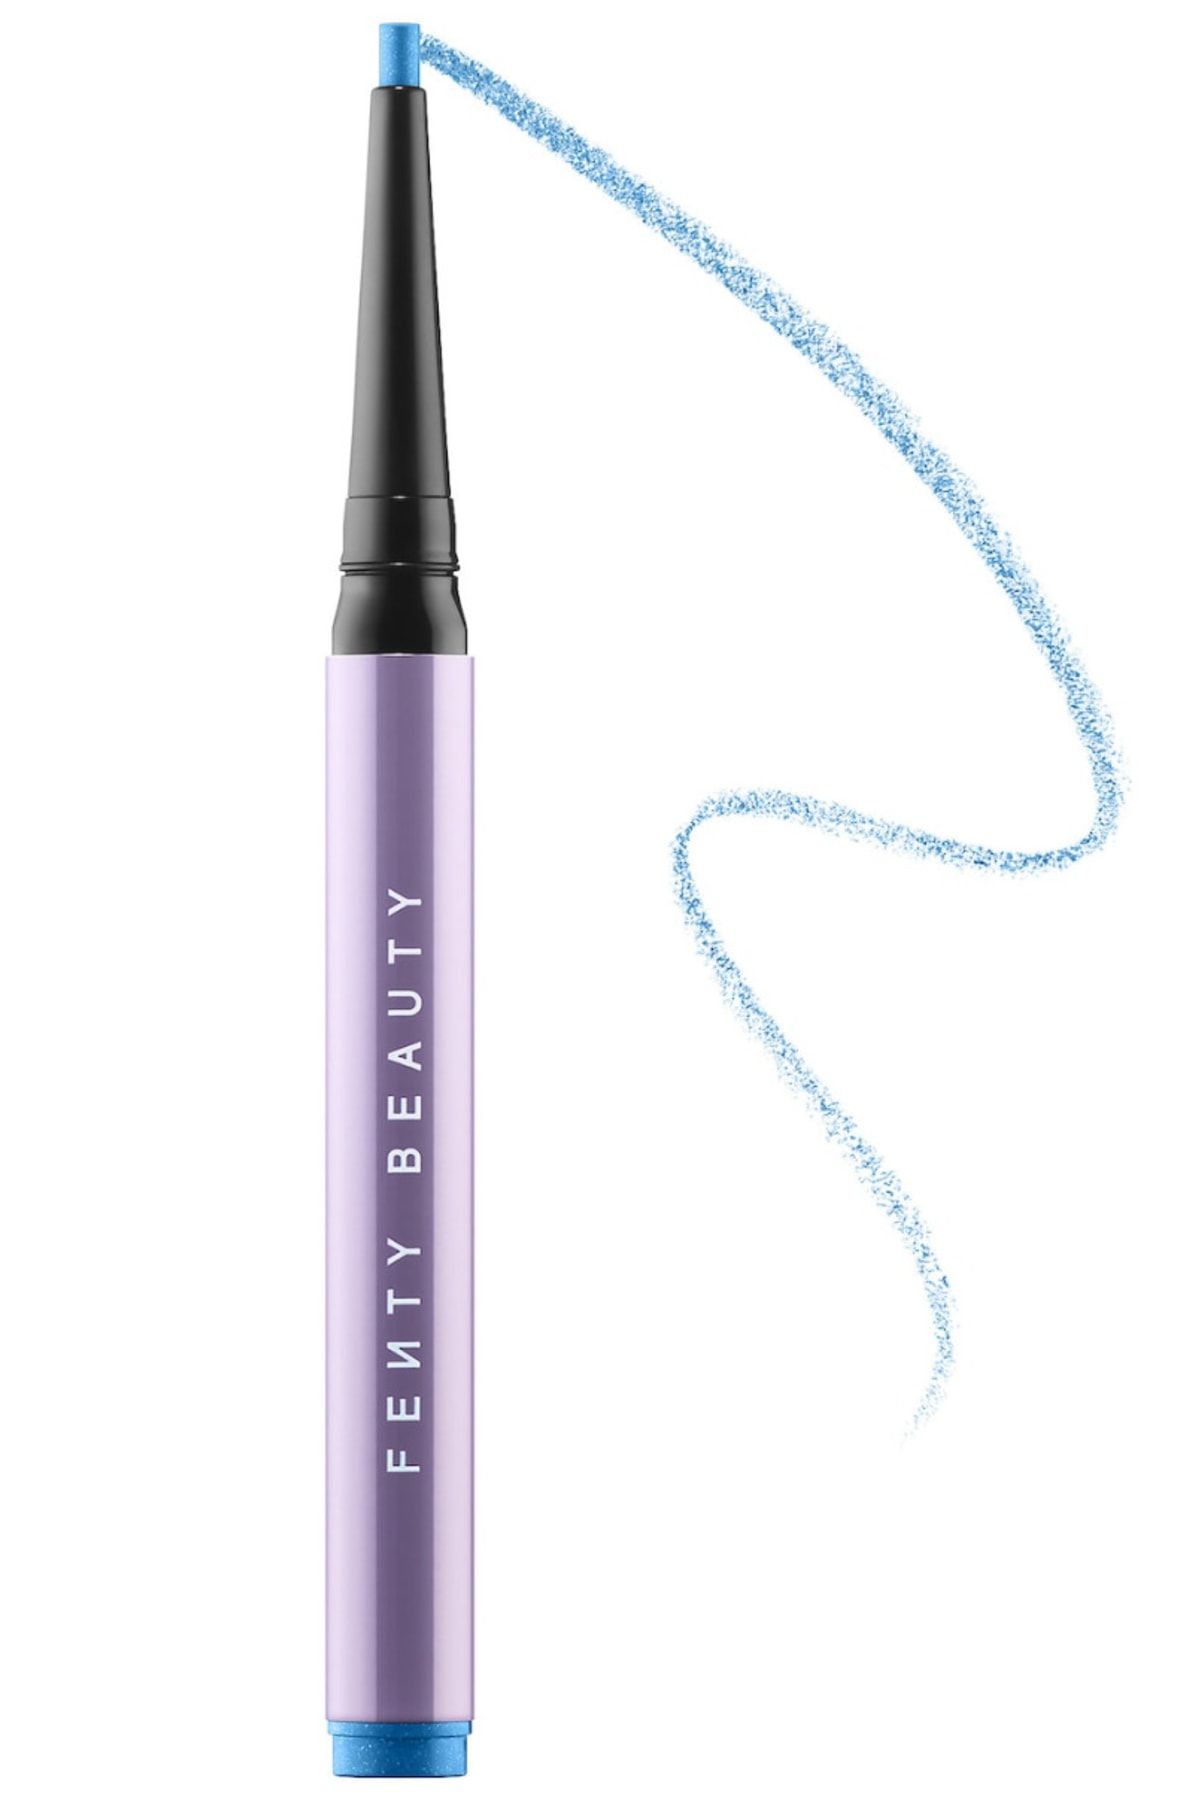 FENTY BEAUTY Flypencil Longwear Pencil Eyeliner